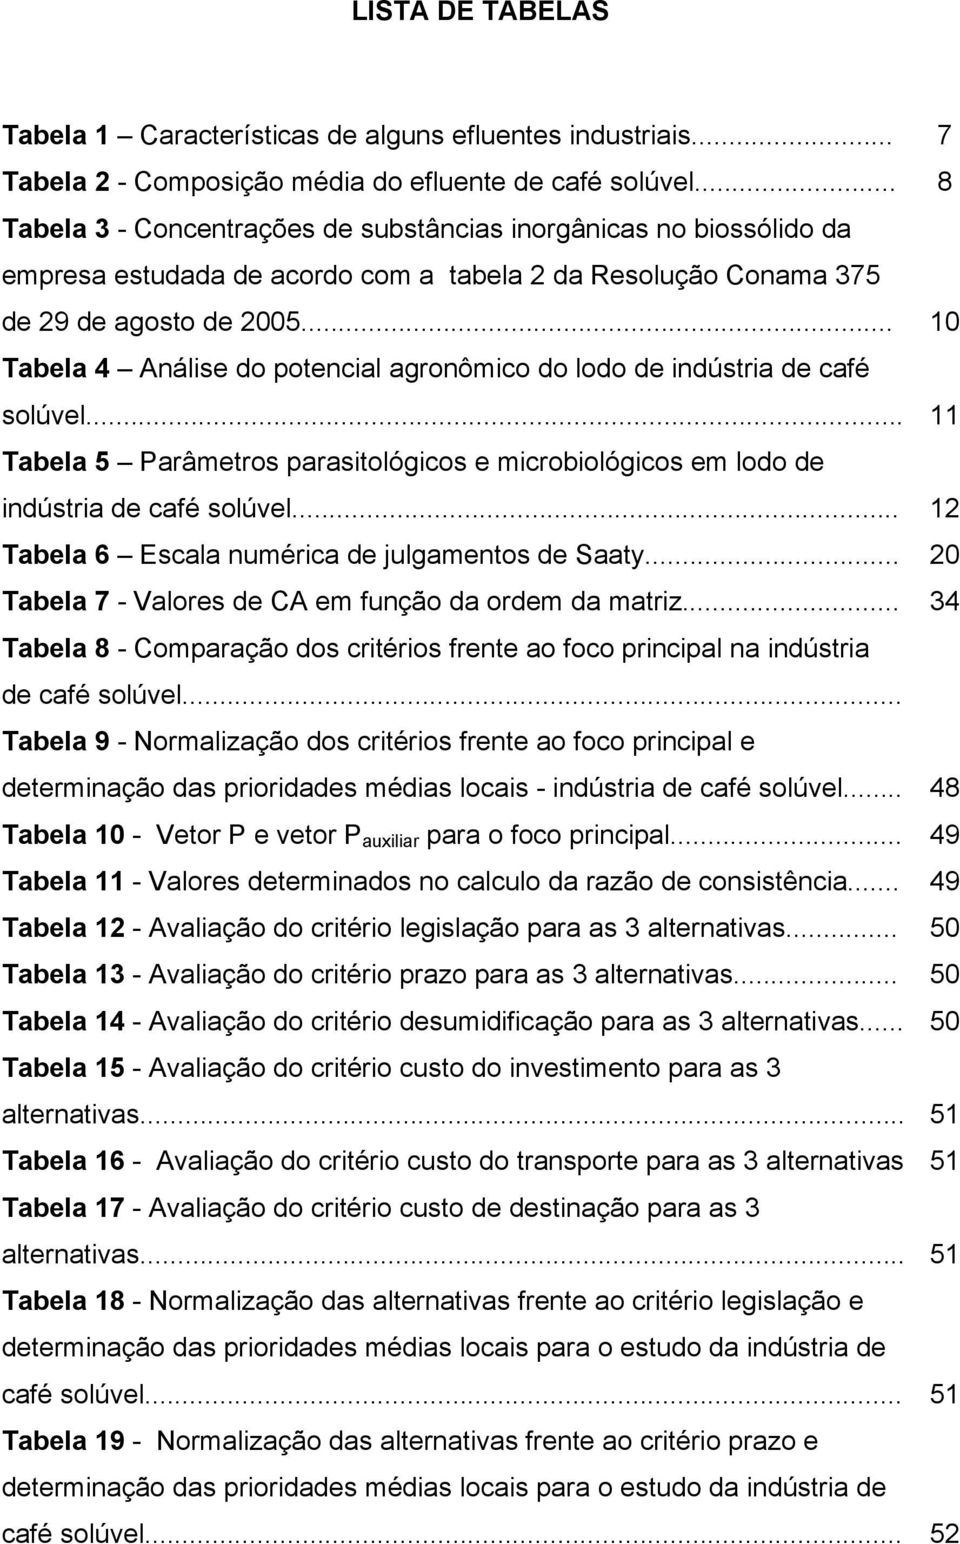 .. 10 Tabela 4 Análise do potencial agronômico do lodo de indústria de café solúvel... 11 Tabela 5 Parâmetros parasitológicos e microbiológicos em lodo de indústria de café solúvel.